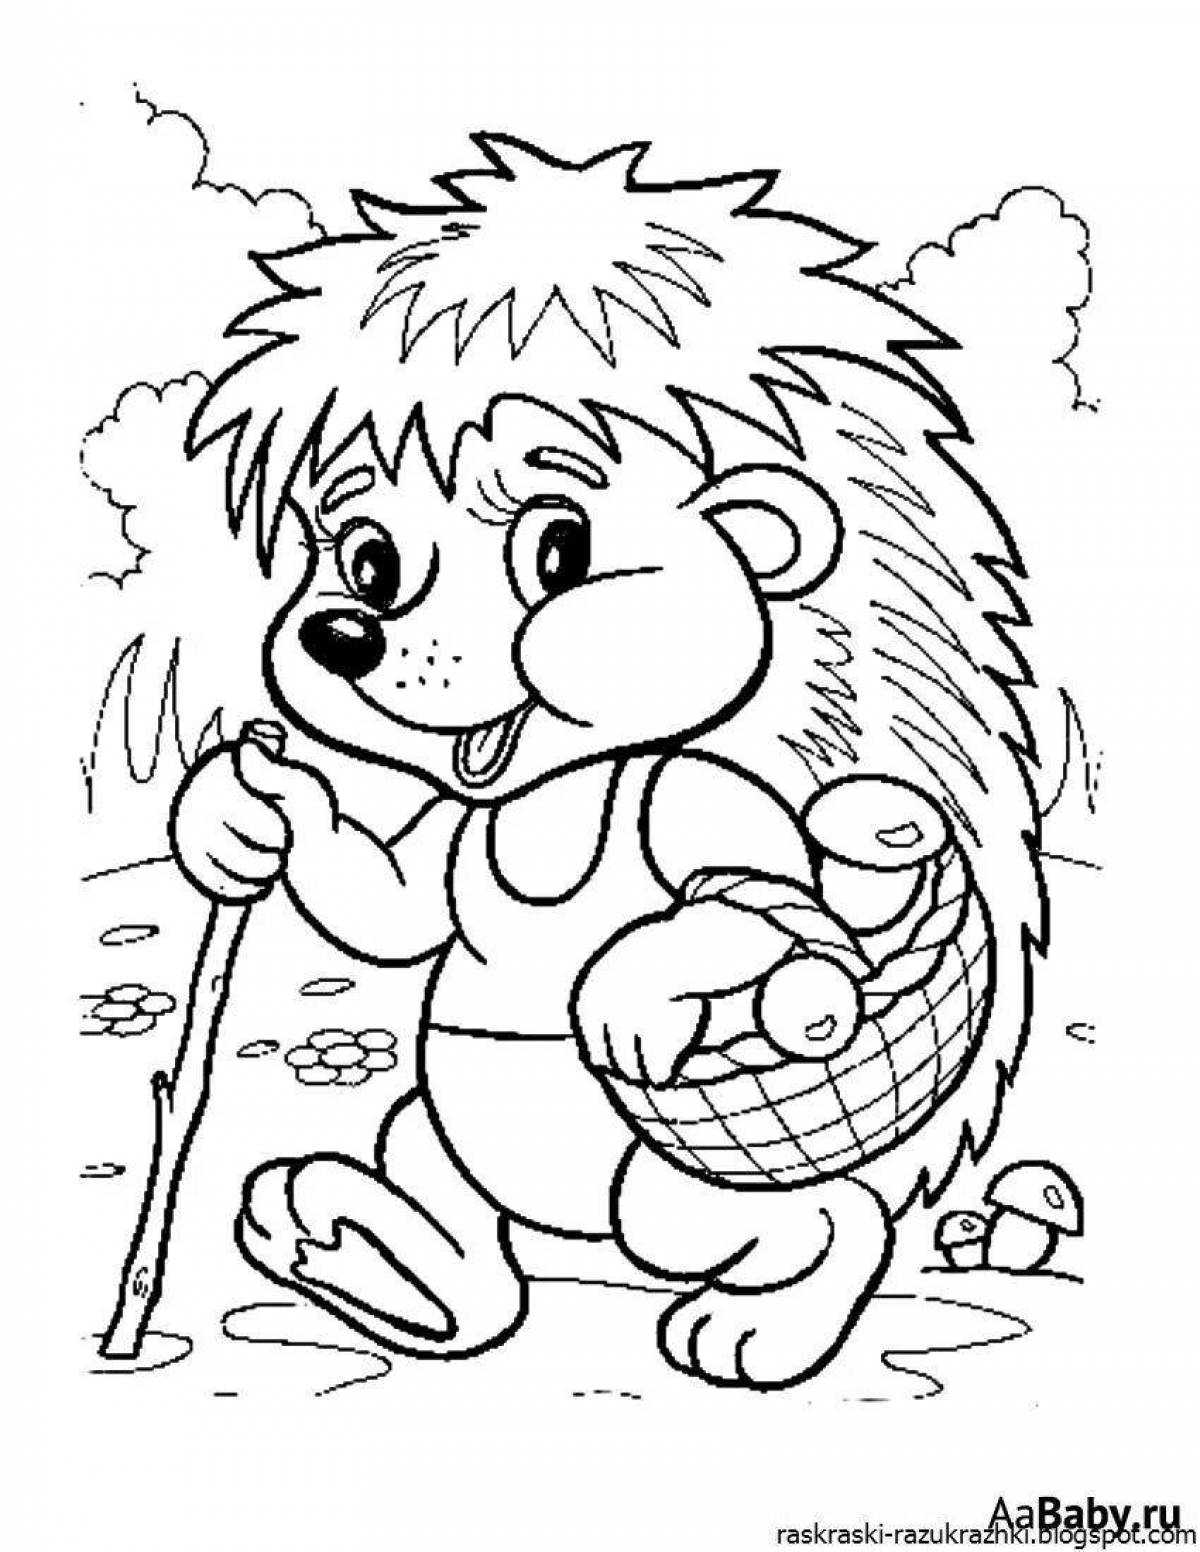 Color-overload hedgehog coloring page для детей